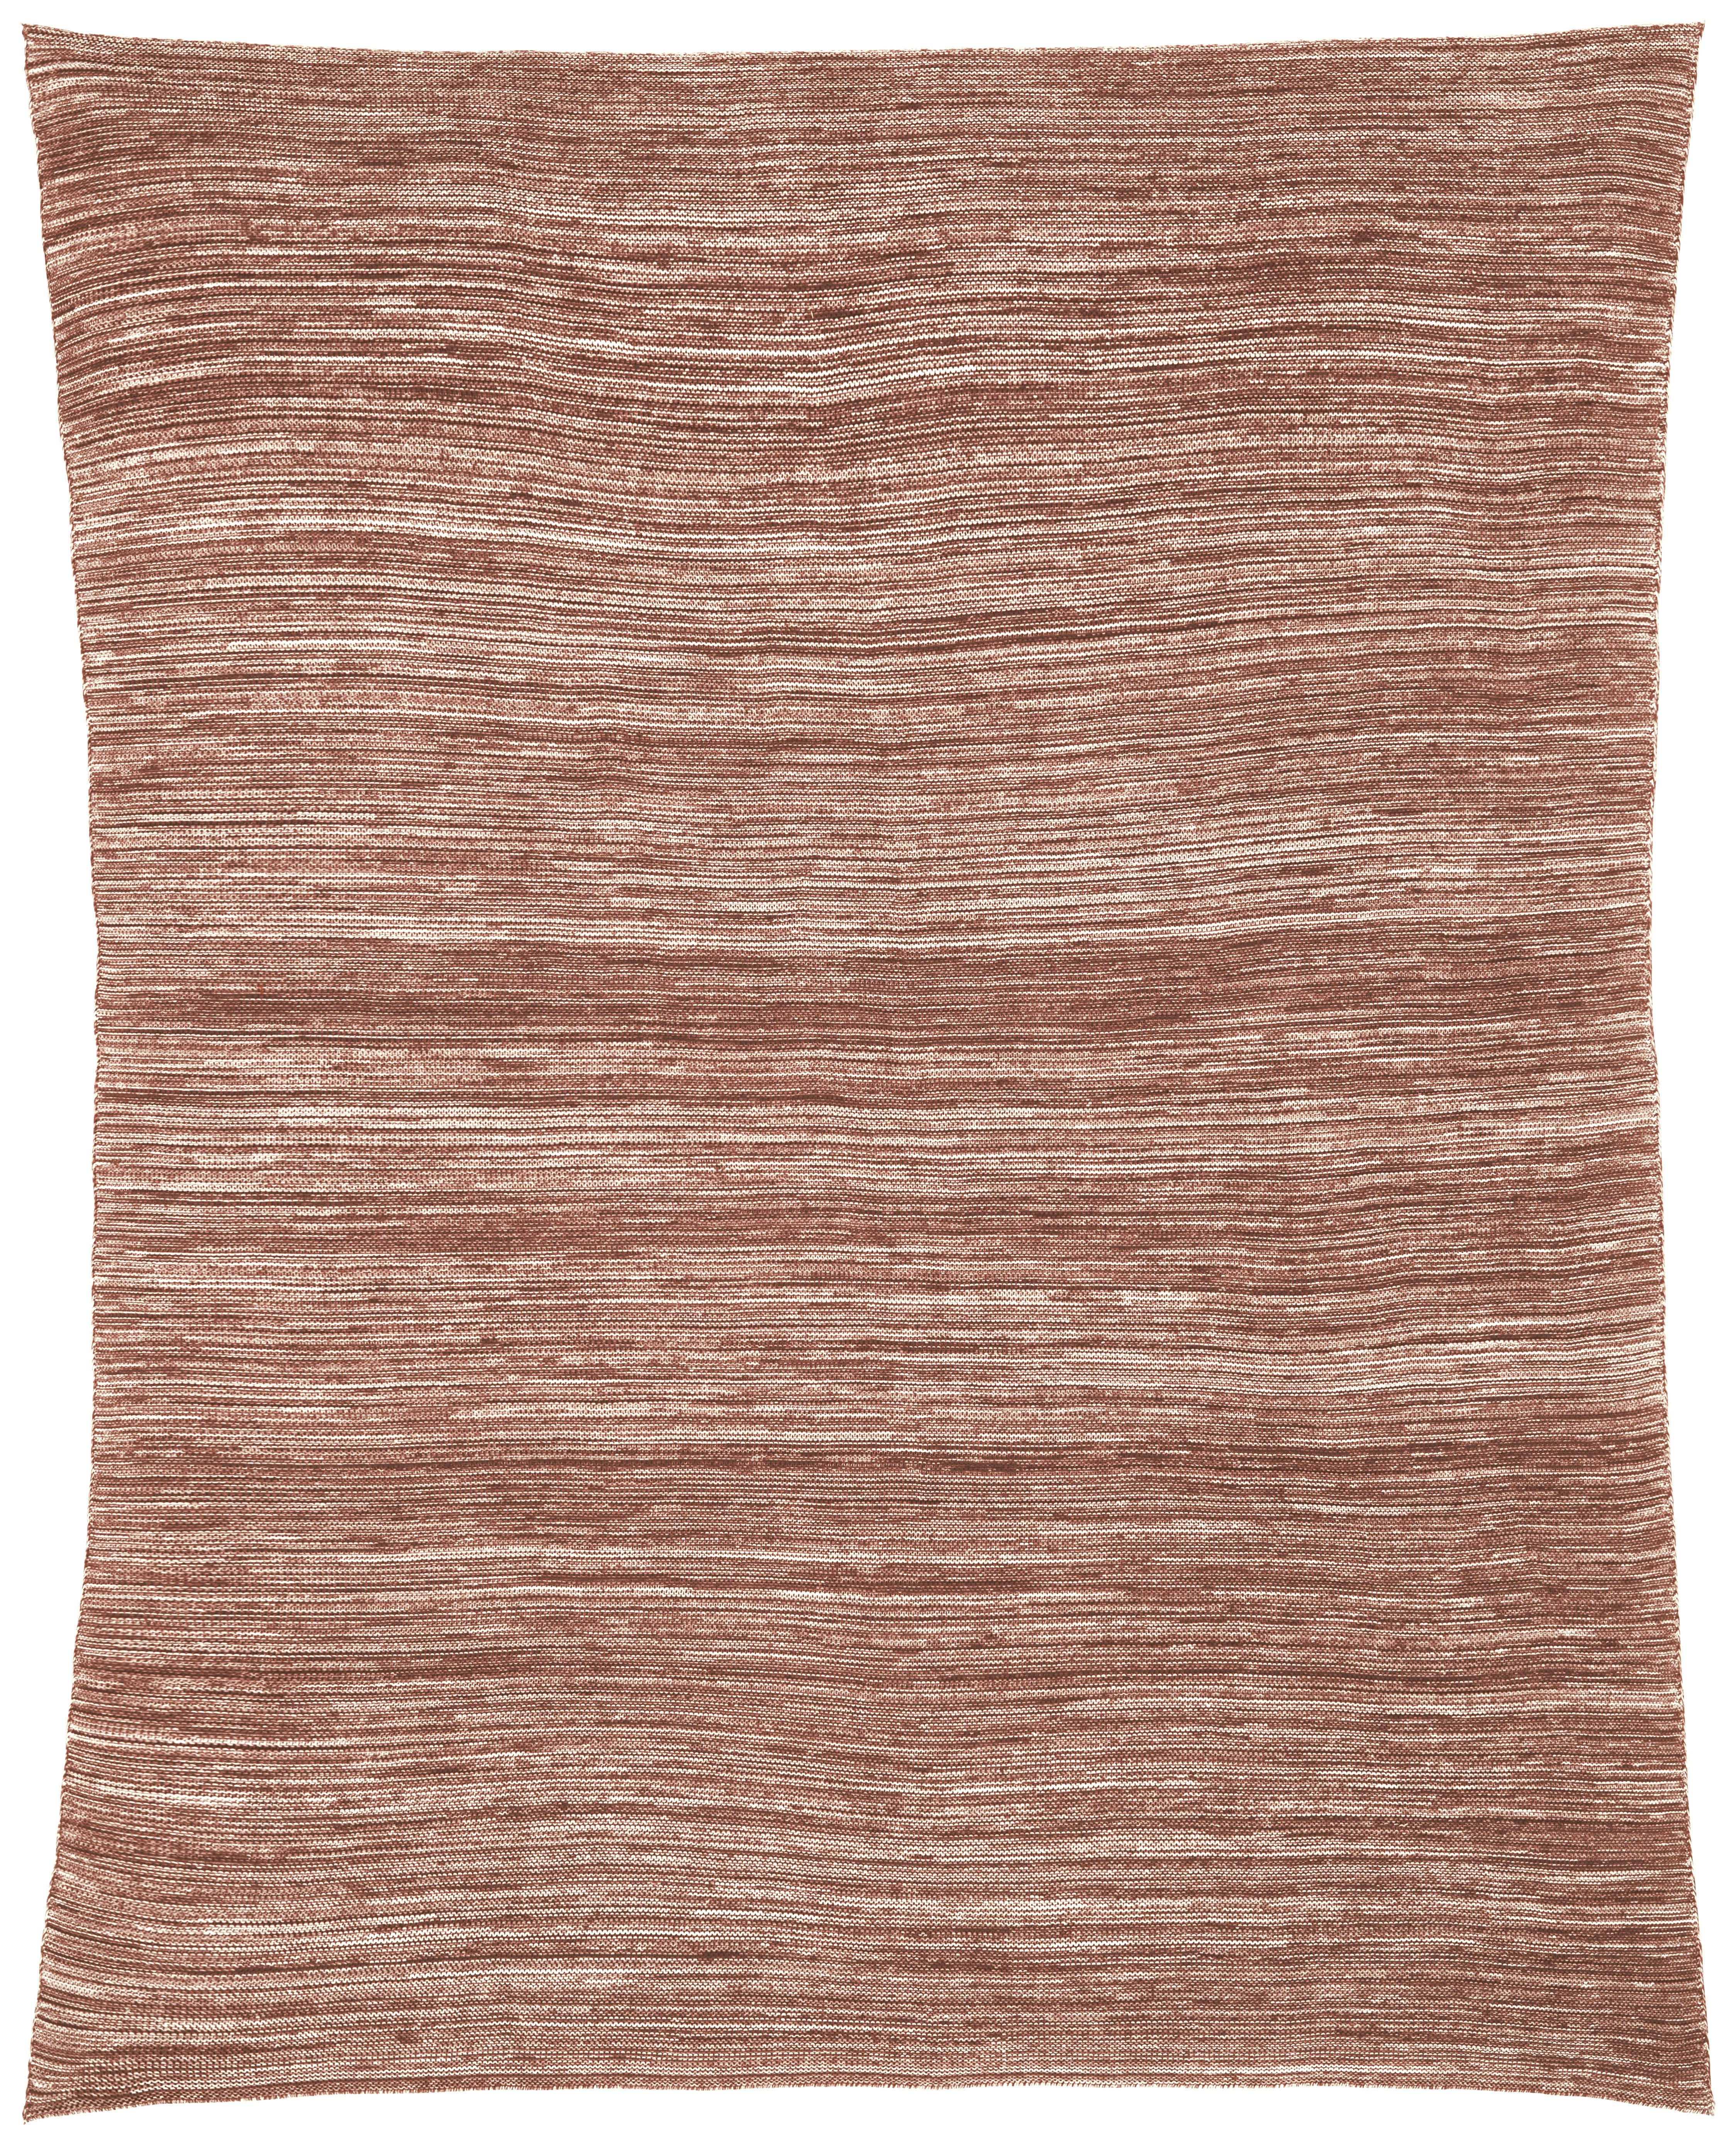 ĆEBE 130/170 cm  - braon, Osnovno, tekstil (130/170cm) - Bio:Vio